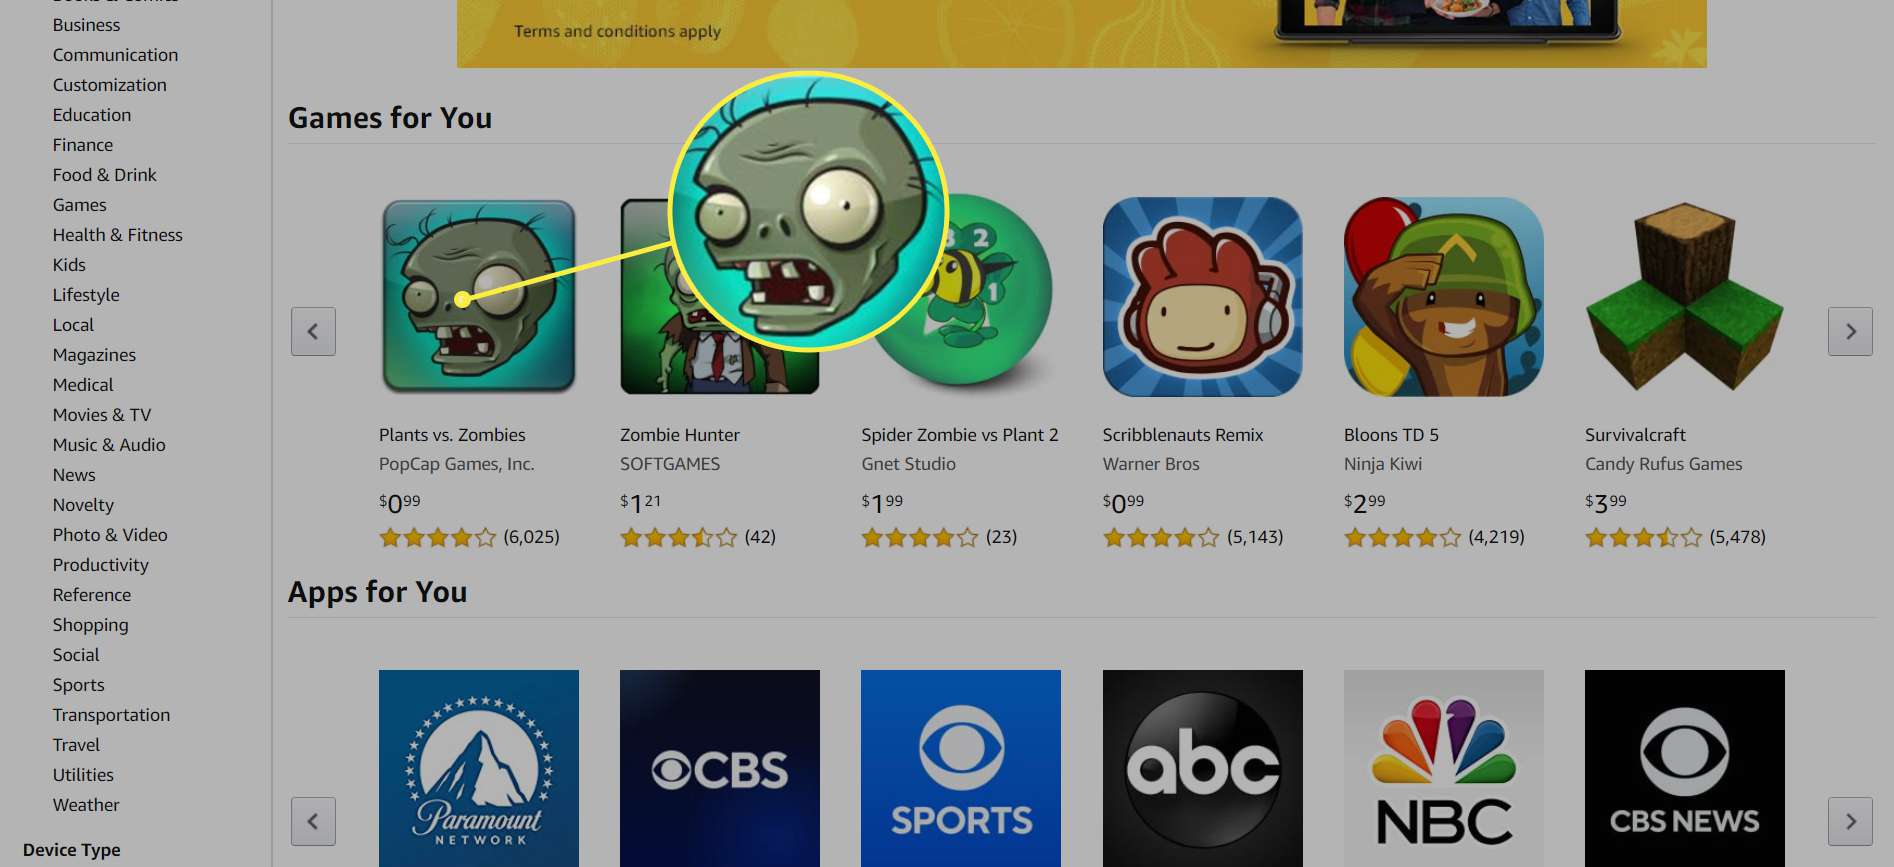 Amazon App Store se zvýrazněnou hrou „Plants vs. Zombies“